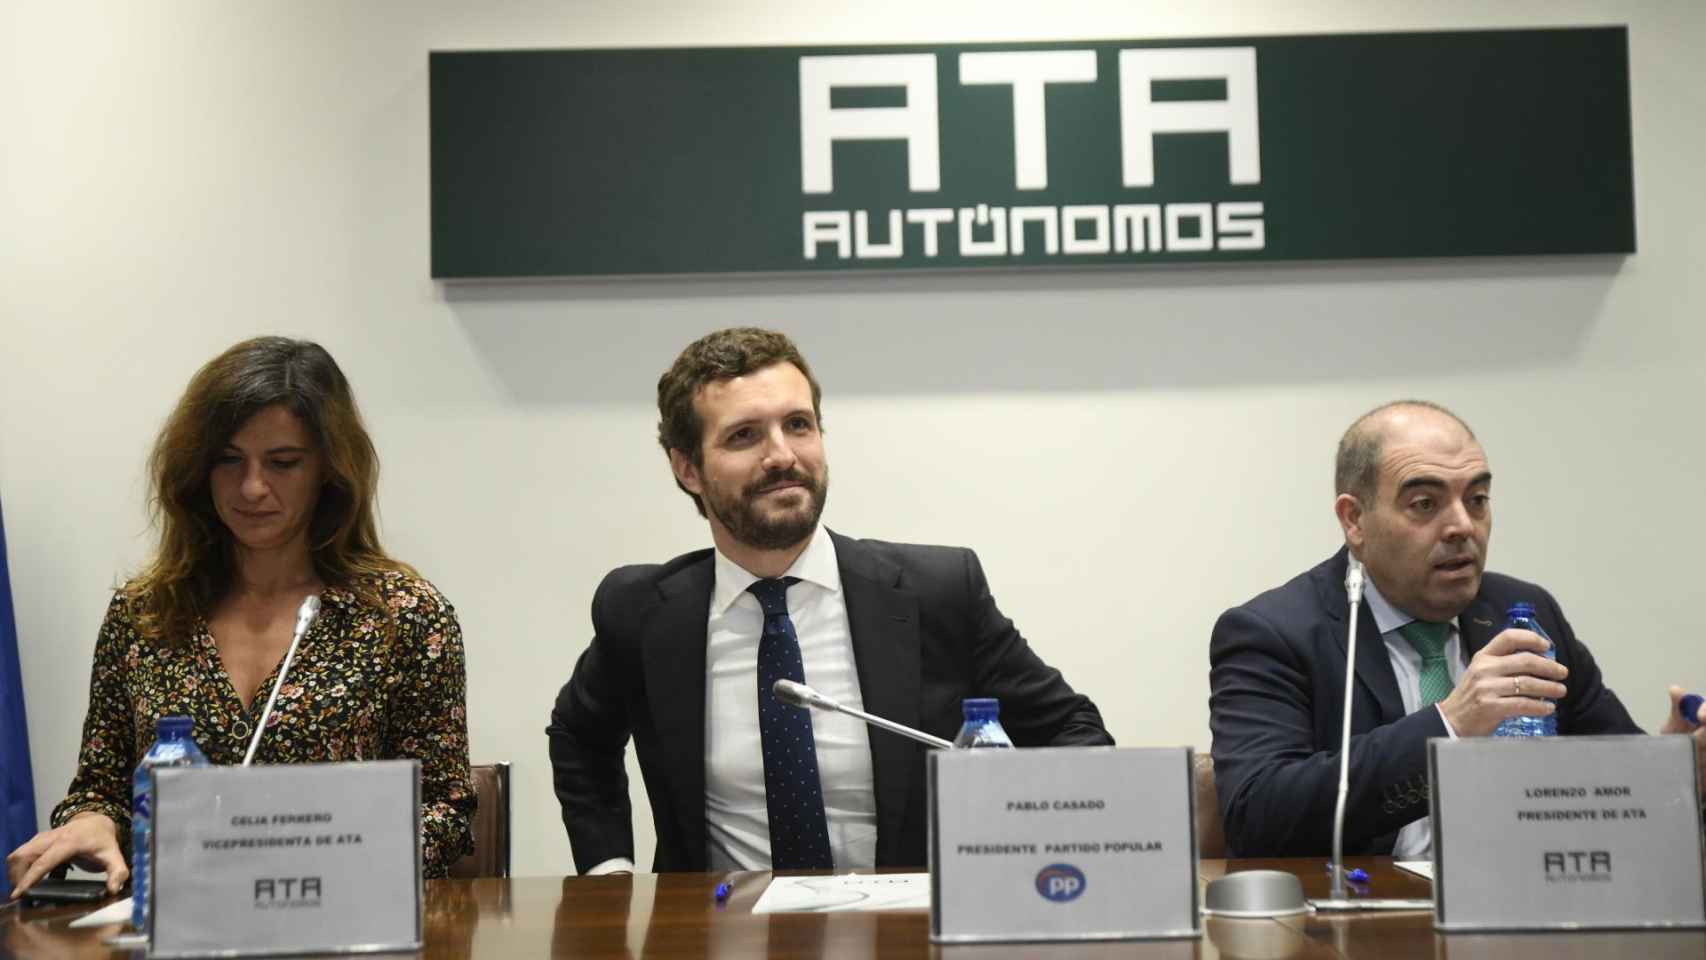 La vicepresidenta ejecutiva de la ATA (Asociación de Trabajadores Autónomos), Celia Ferrero; el presidente del PP, Pablo Casado; y el presidente de la ATA, Lorenzo Amor / EUROPA PRESS